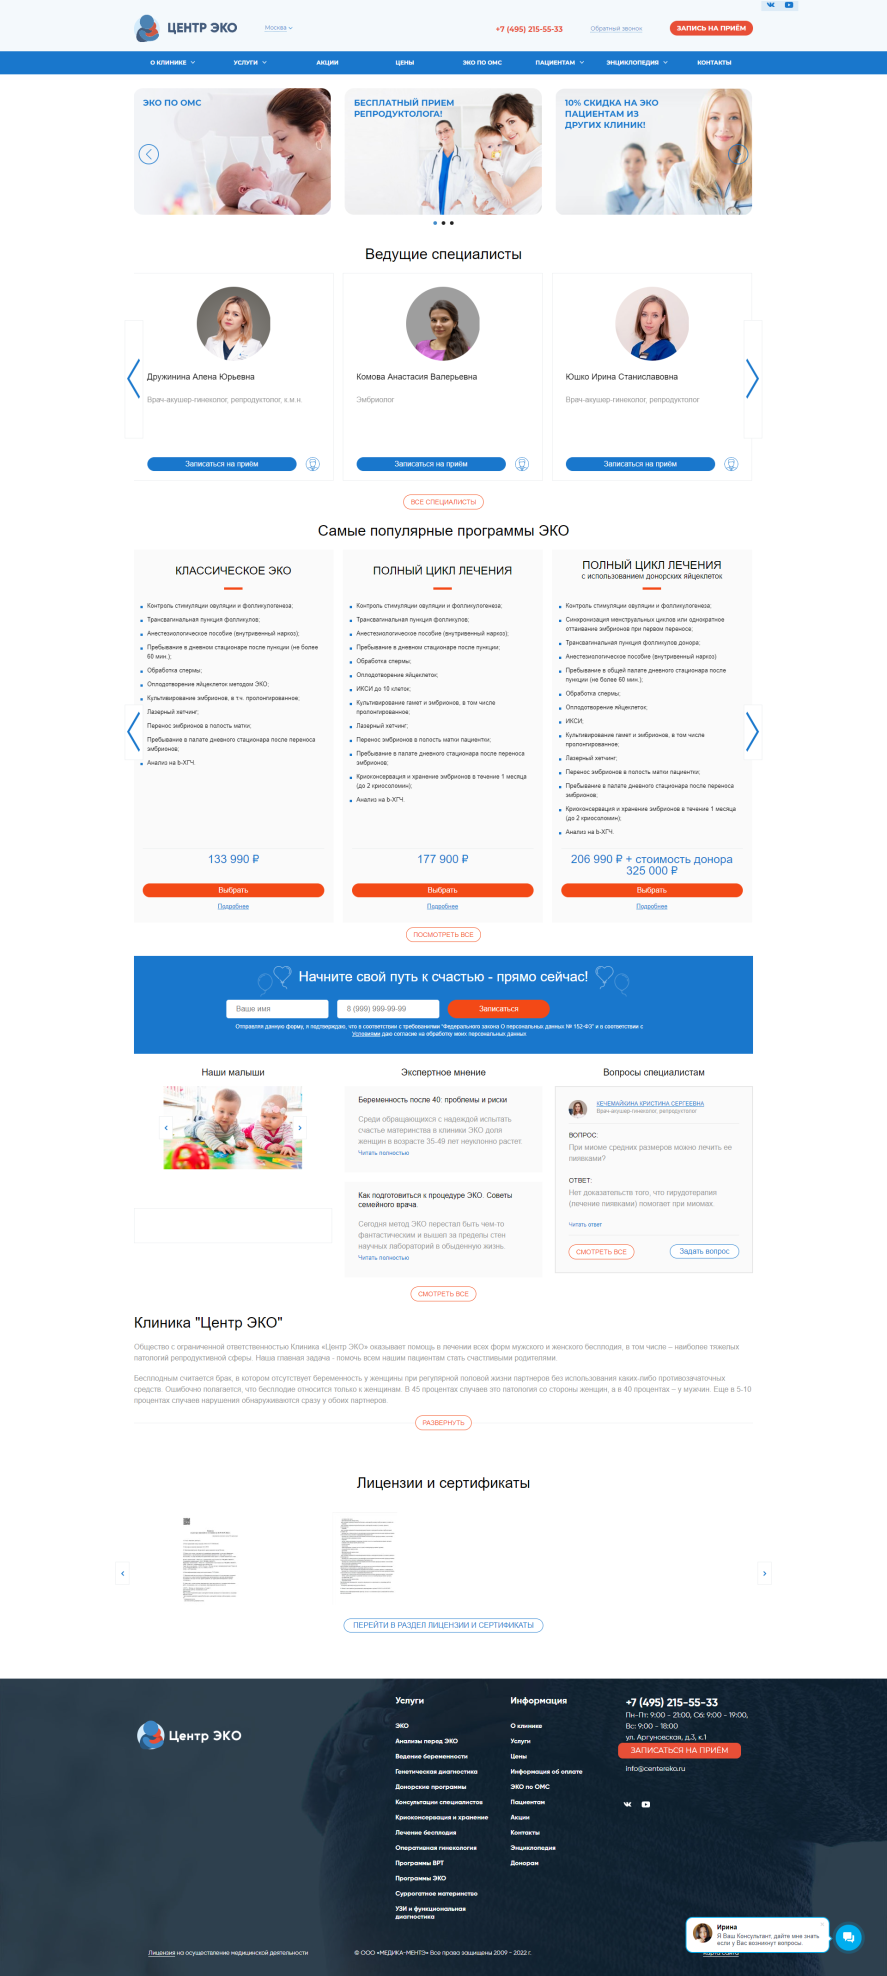 дизайн главной страницы сайта https://www.centereko.ru/